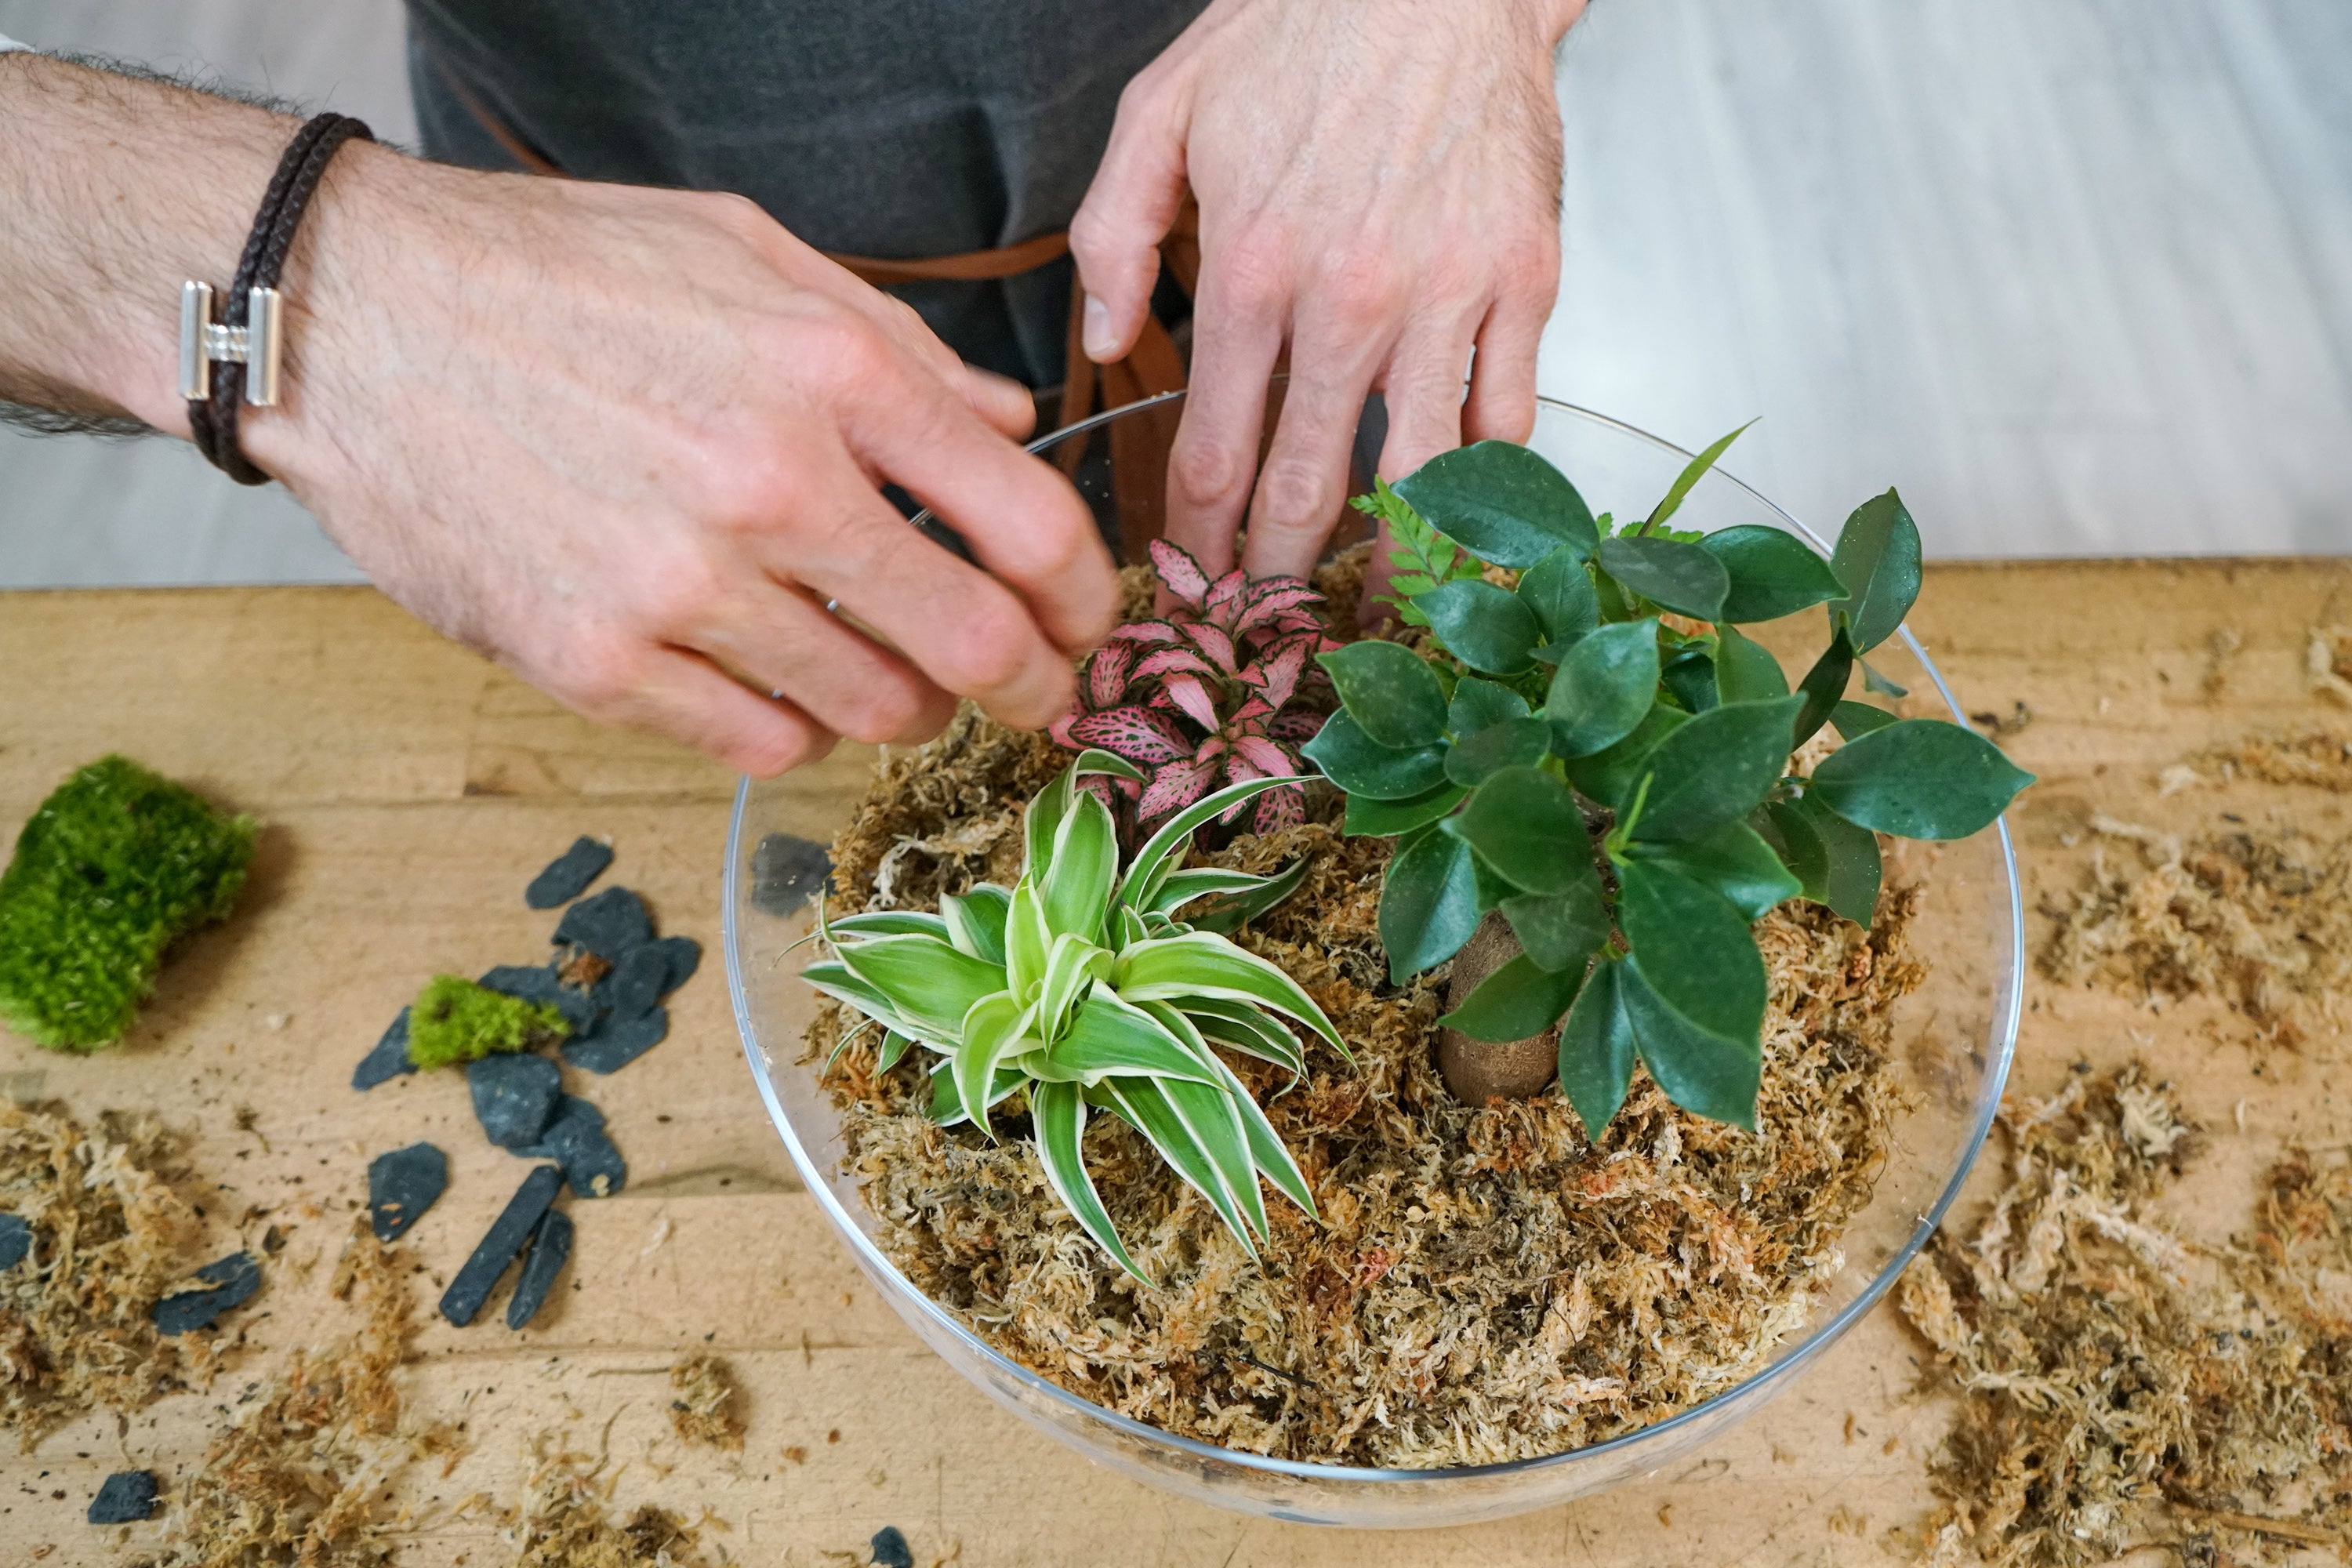 Kit DIY Terrarium Carla Large - 1 plante principale à personnaliser